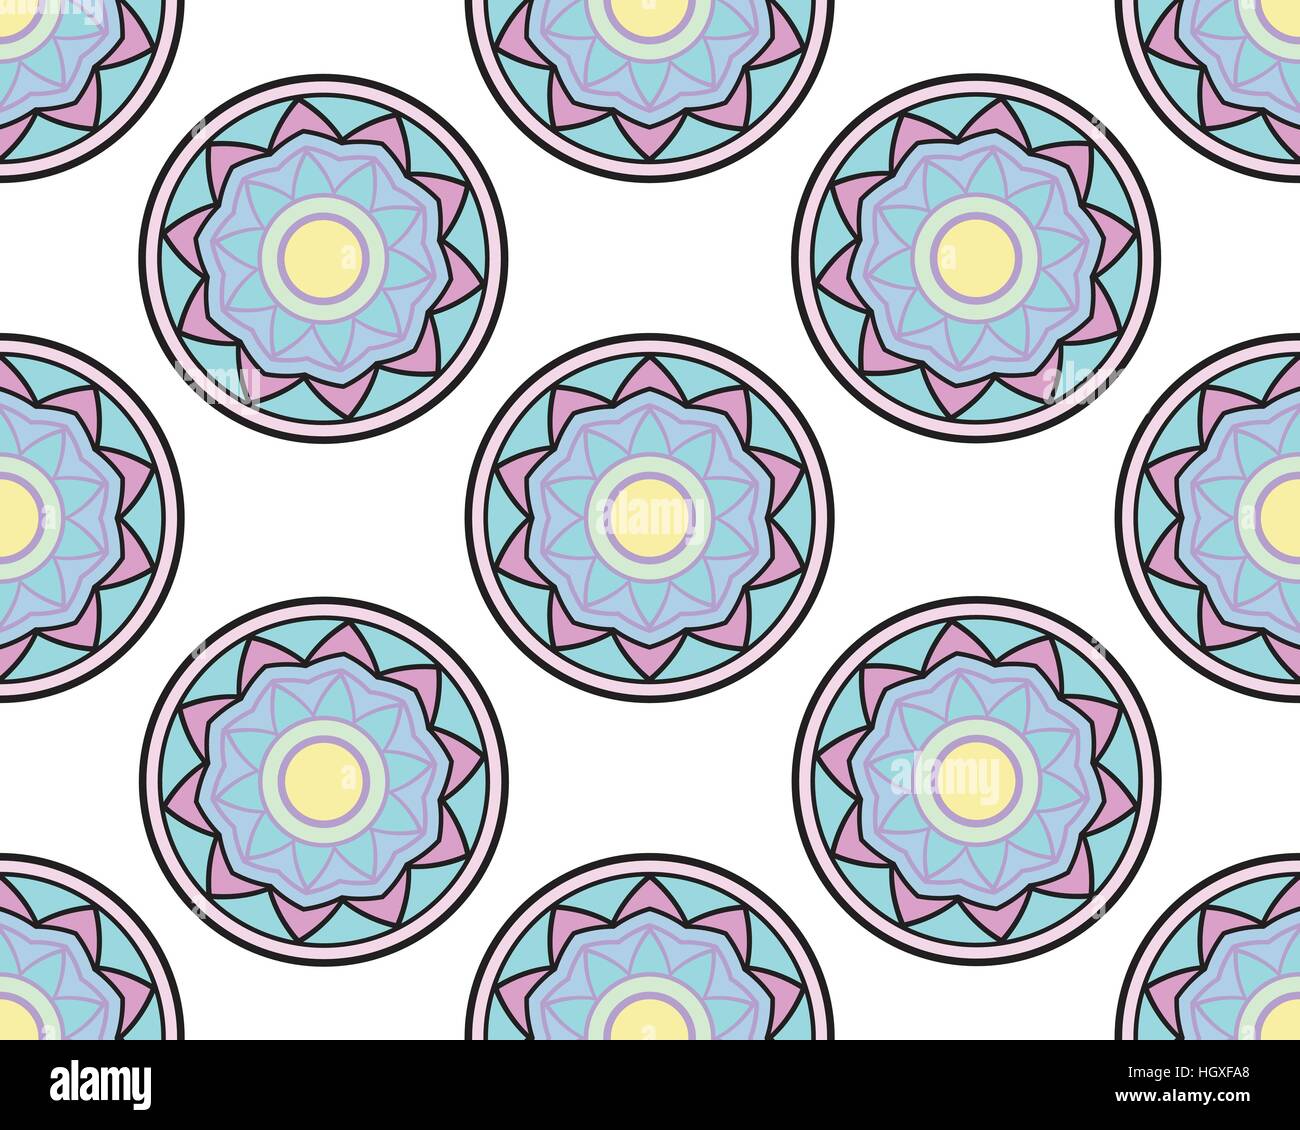 Elegante Ornamente Spitze Mandala. Alte dekorative Ornament-Muster. Handgezeichnete Islam, Arabisch, Indisch, Osmanischen Motiven, Spitze Anhänger, Grußkarten, w Stock Vektor